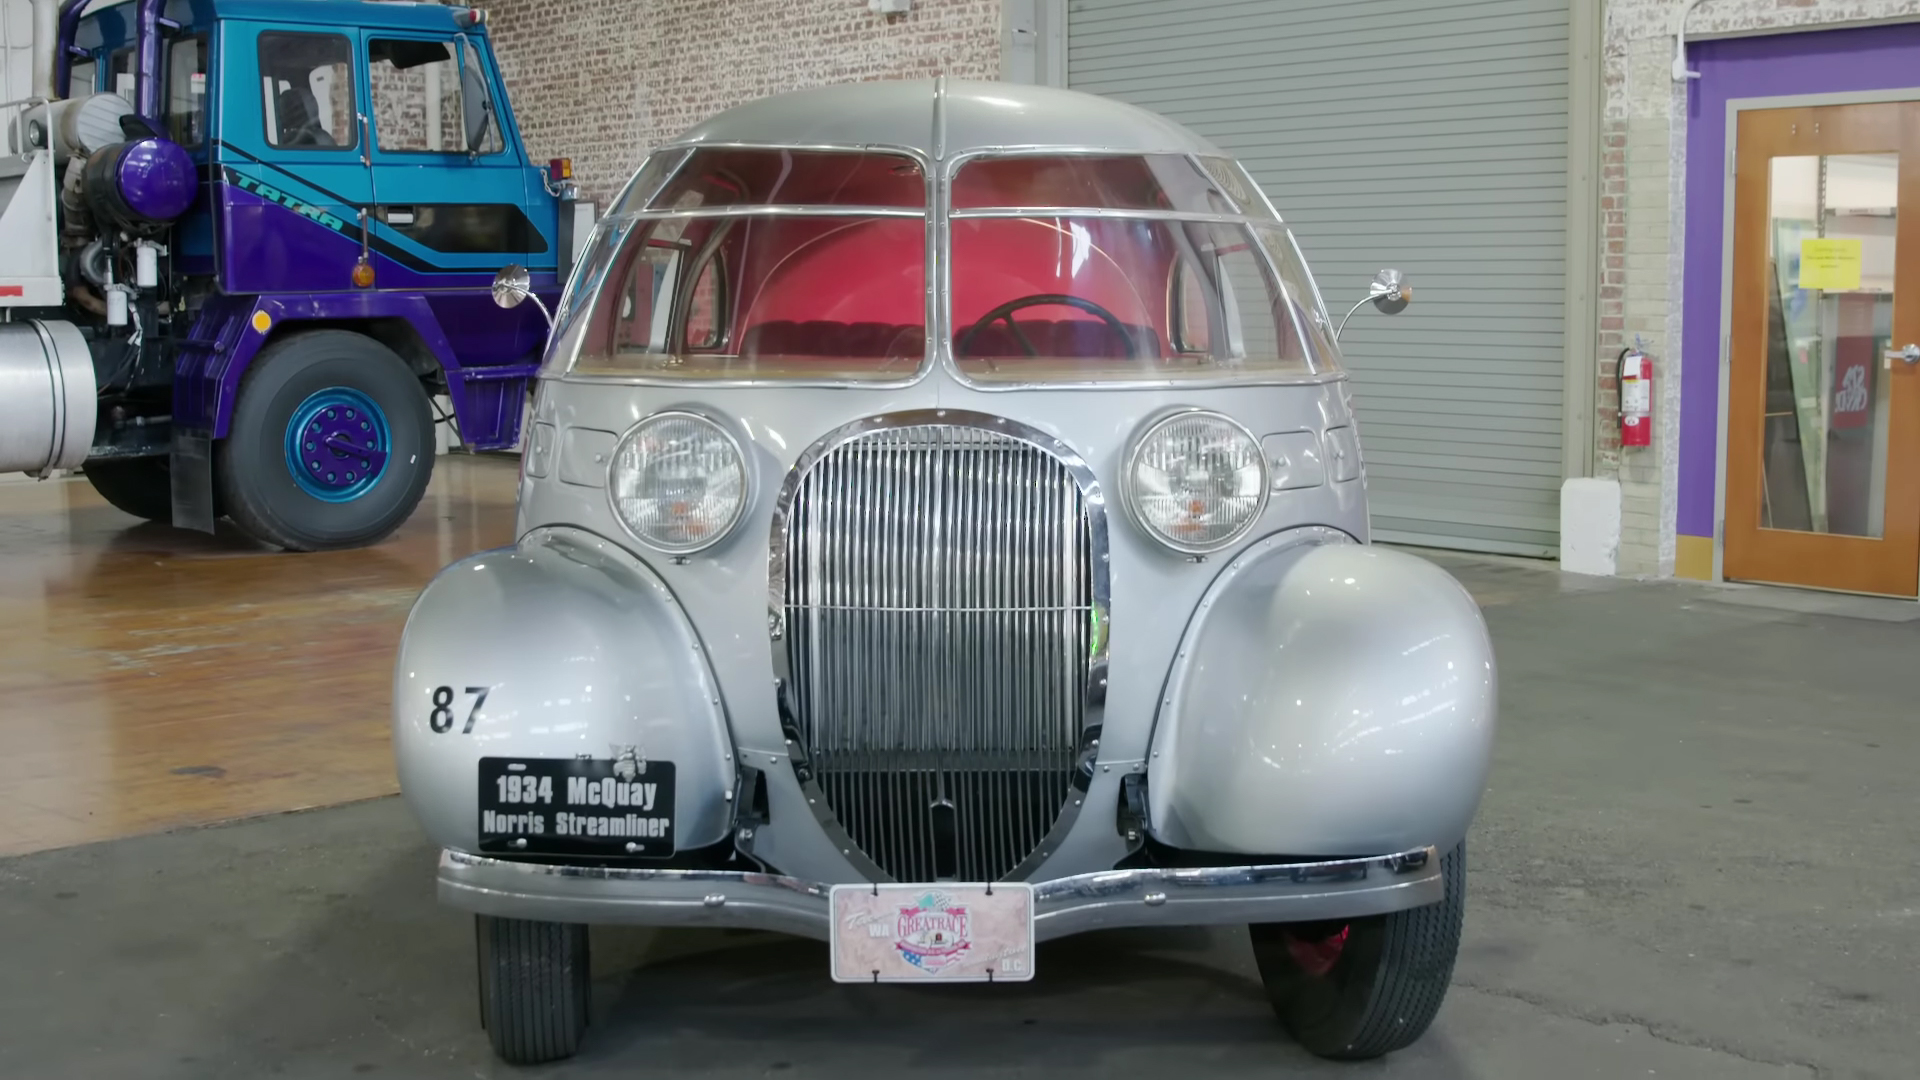 这辆1934年的McQuay-Norris流线型车是一辆20世纪30年代的福特制造的奇异气泡车